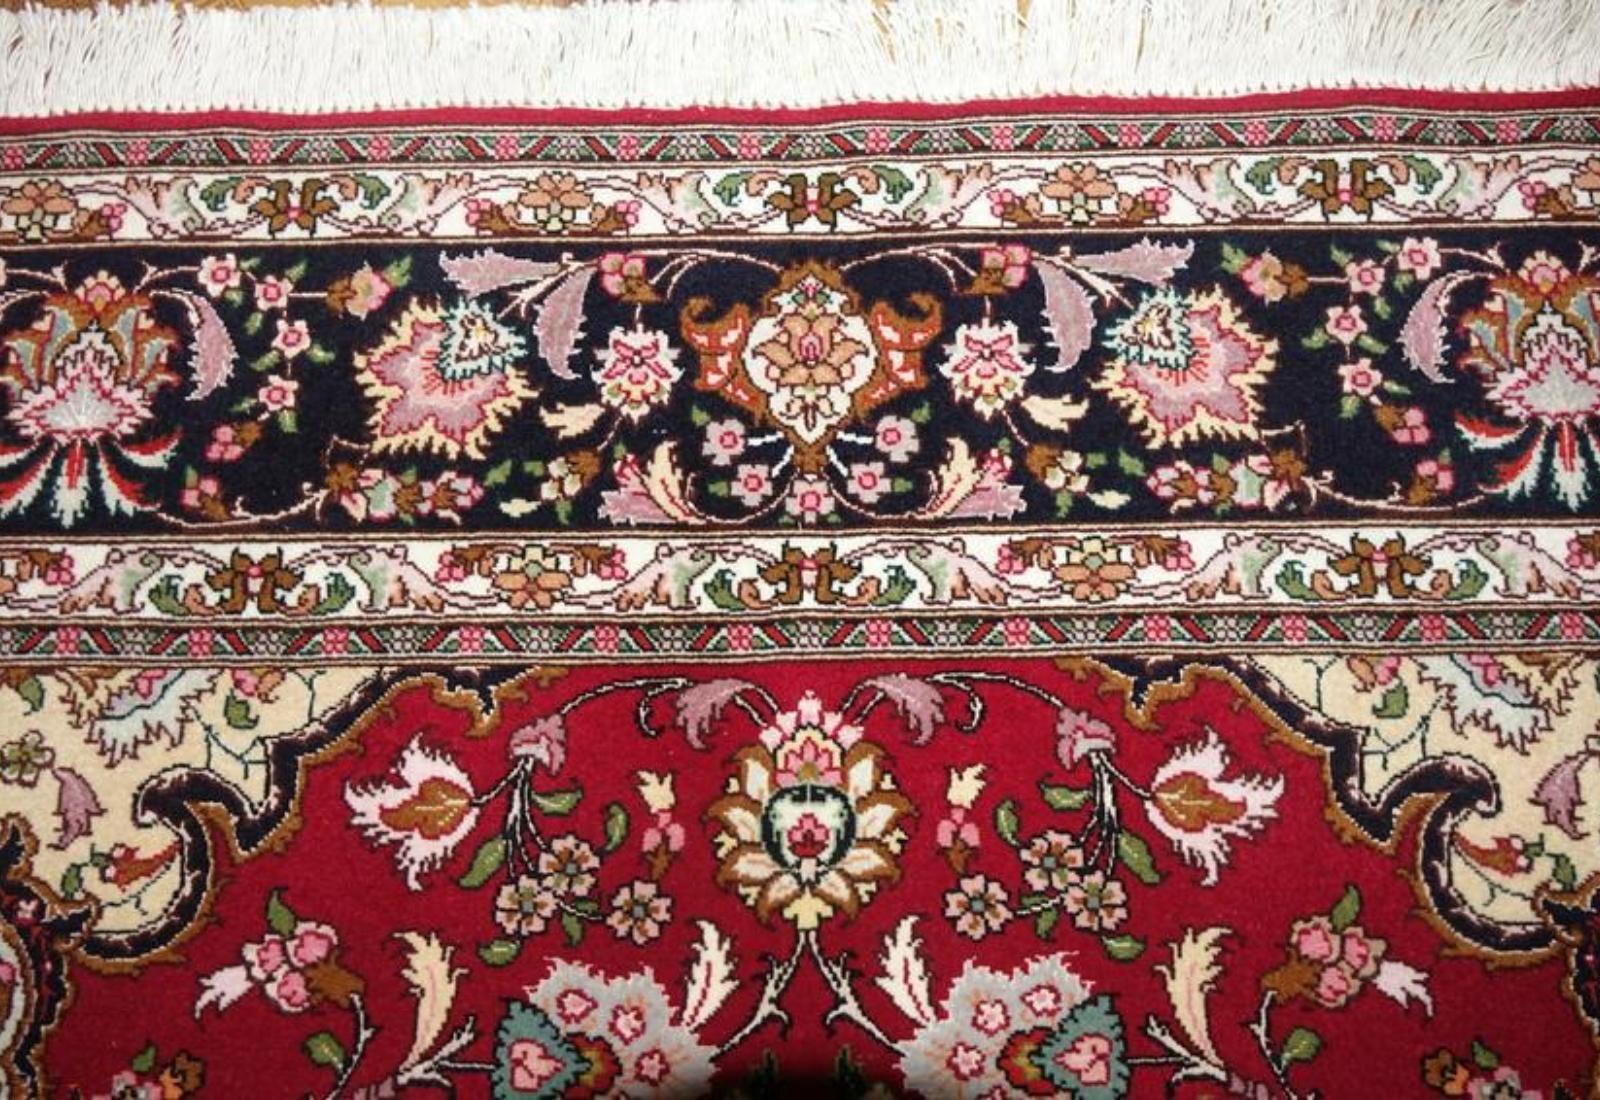 Very fine Persian Tabriz Silk & Wool - 5' 6.1' For Sale 1